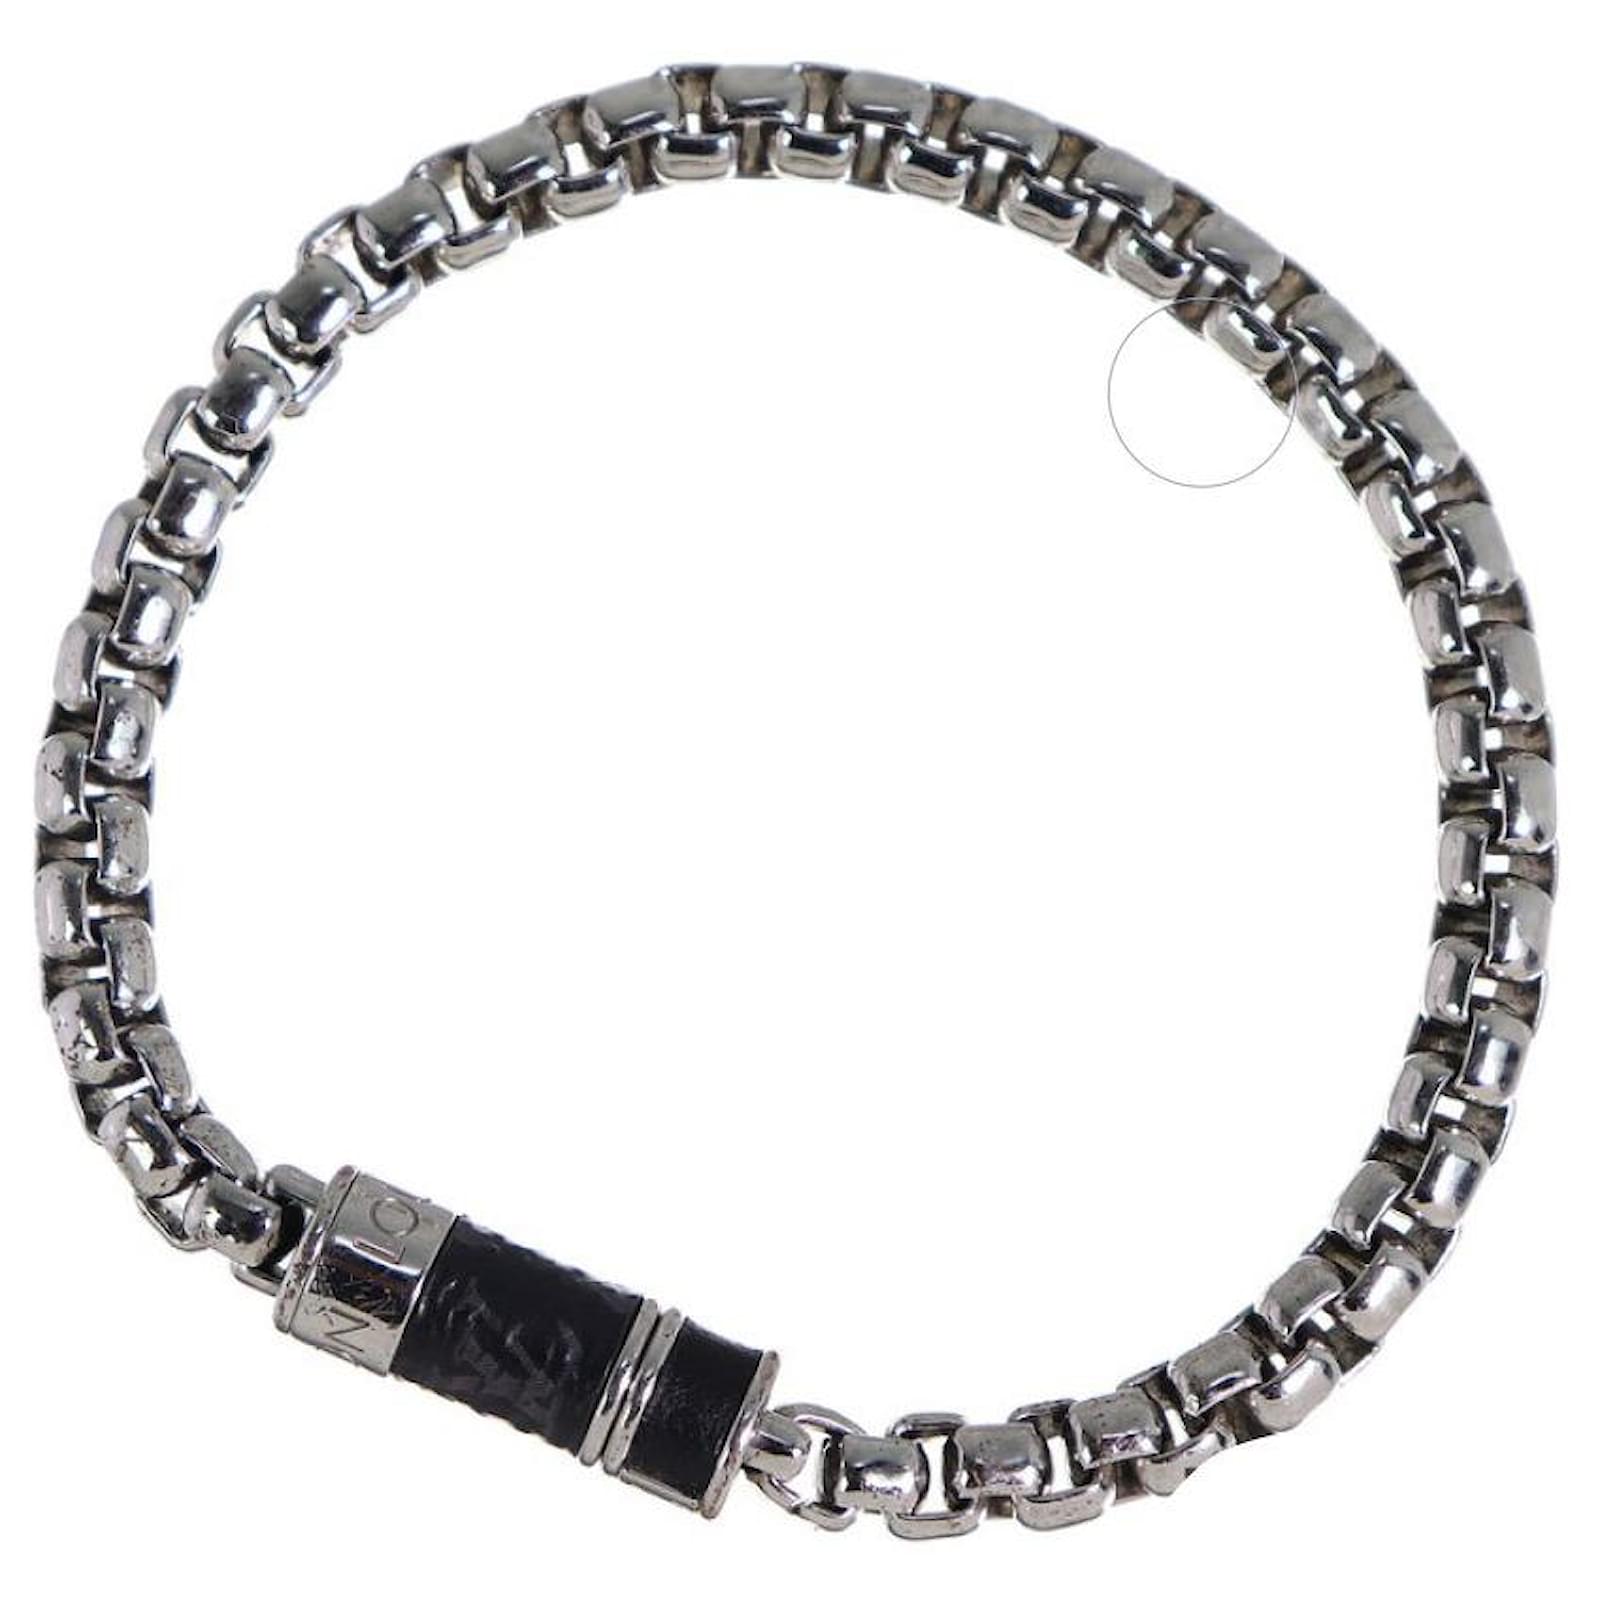 Shop Louis Vuitton Monogram Chain Bracelet (M63107) by SpainSol